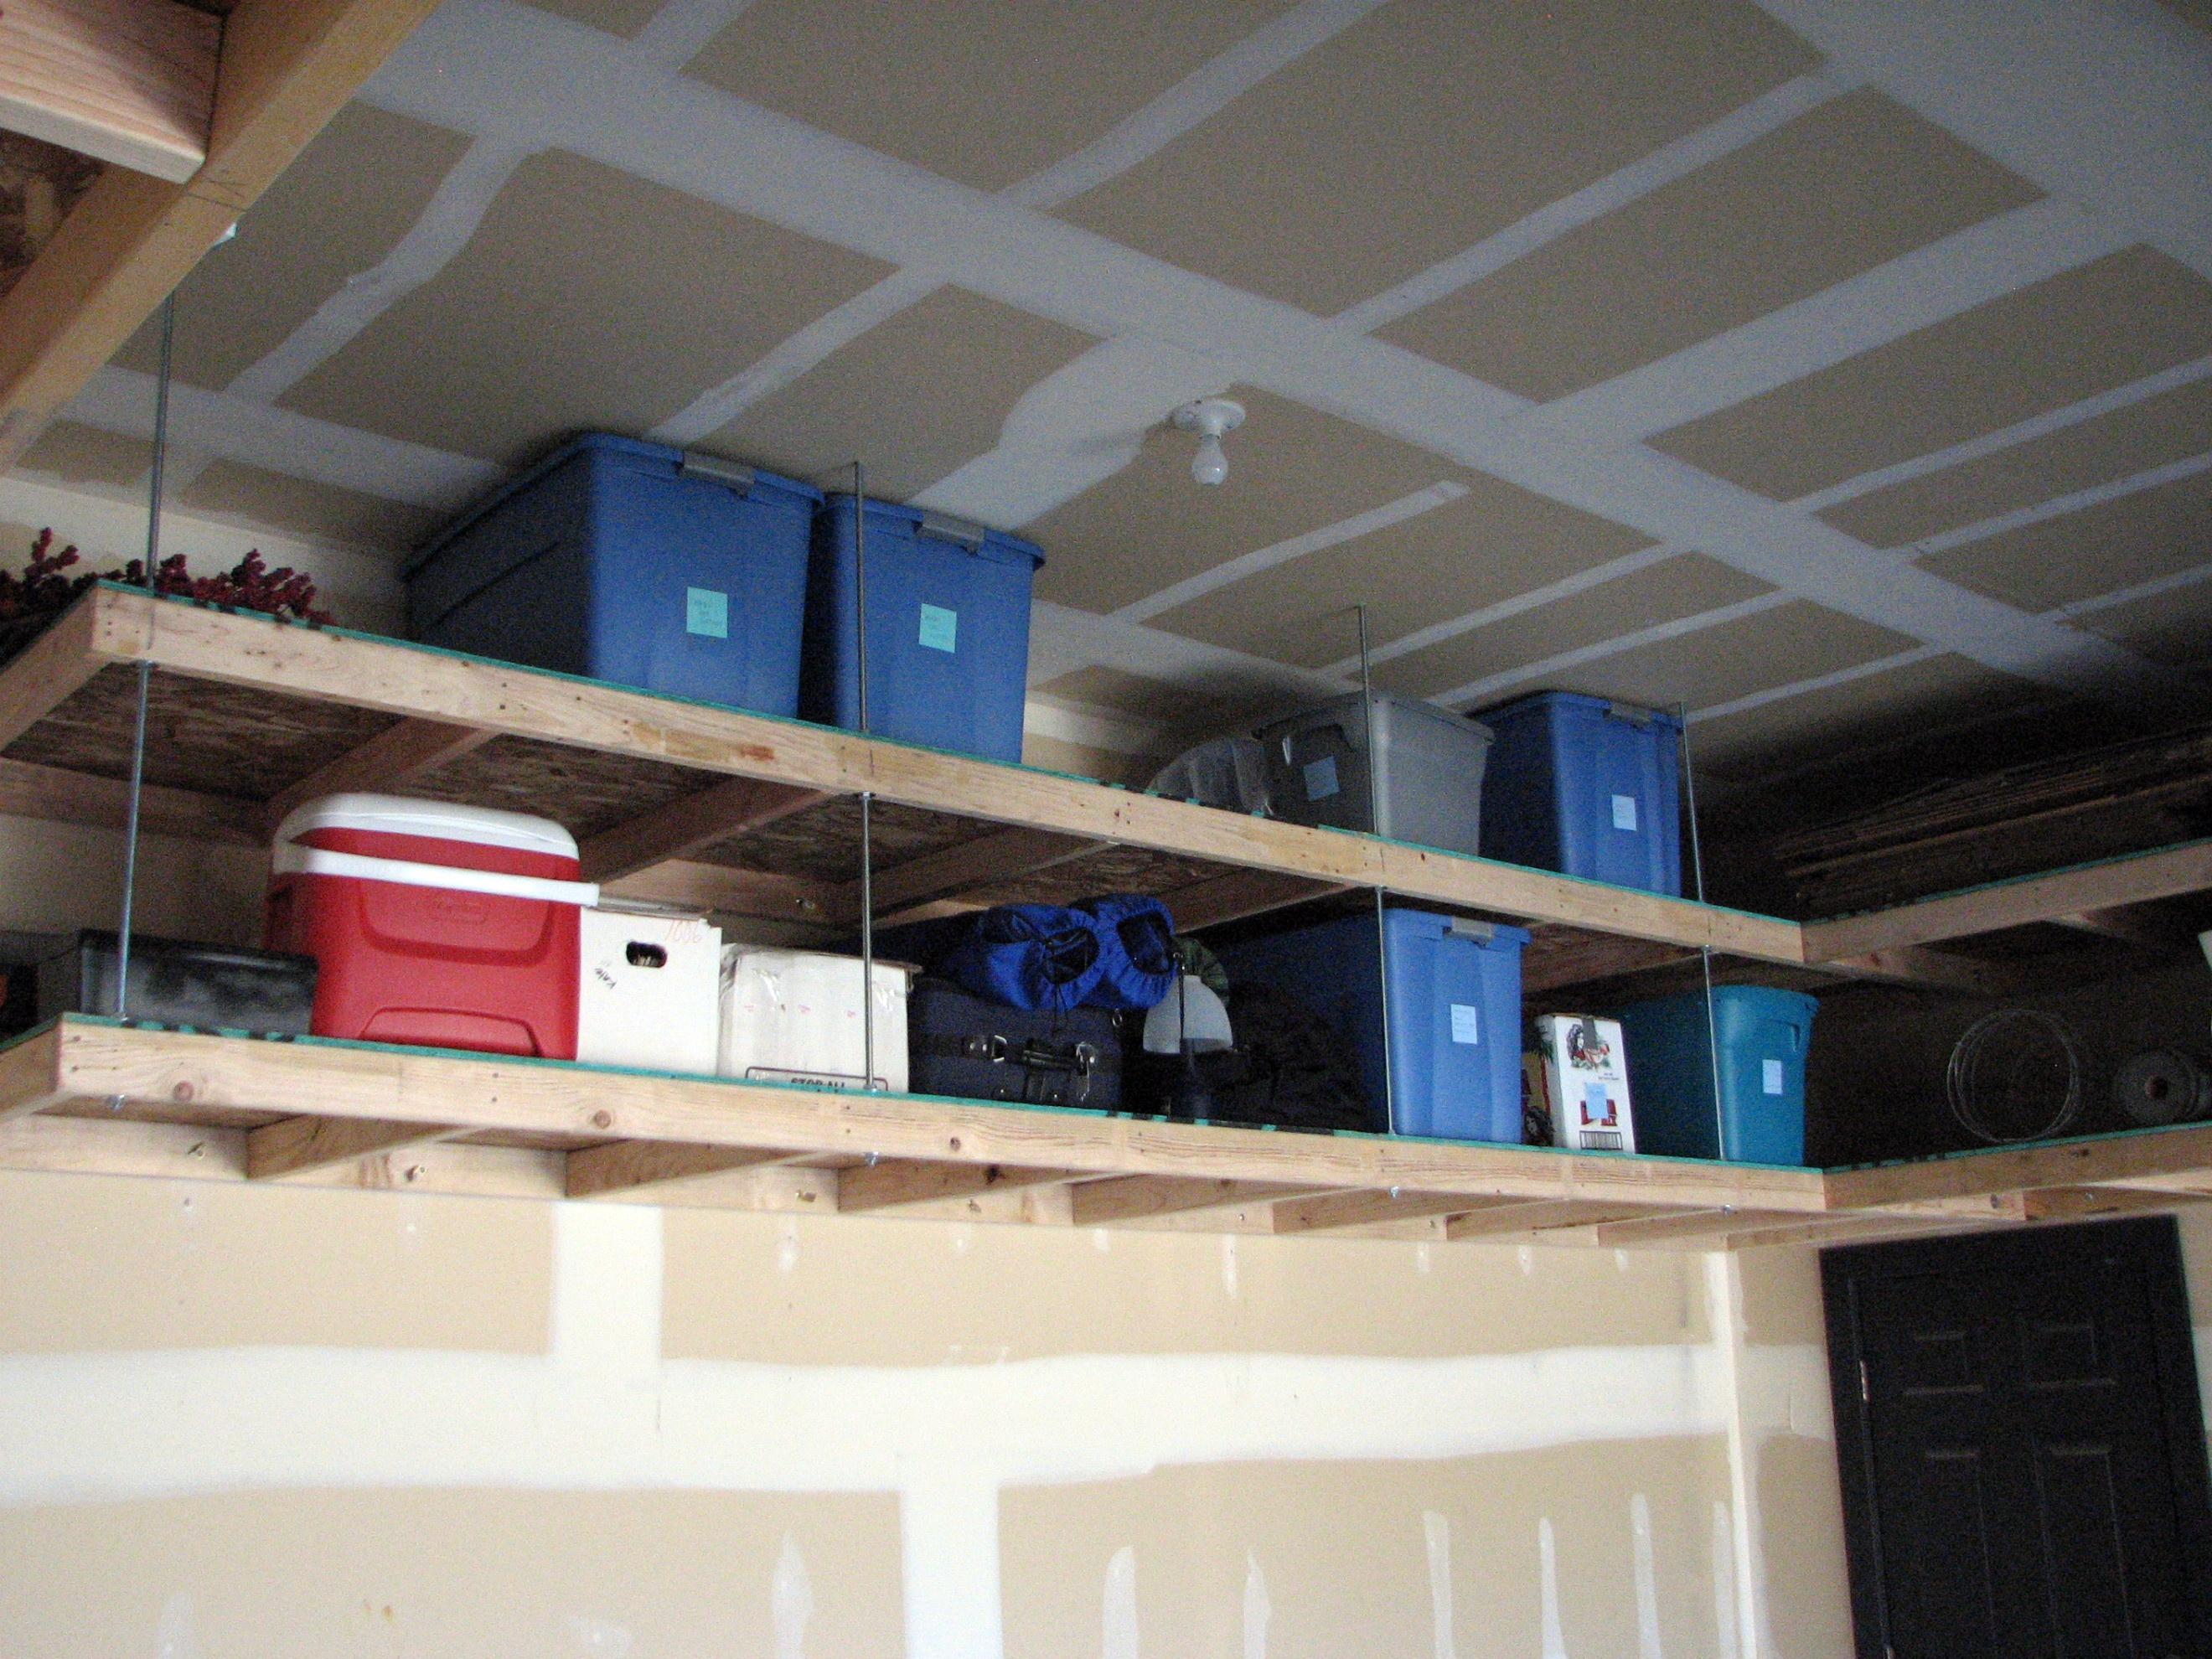 Best ideas about Overhead Garage Storage DIY
. Save or Pin Genius Garage Organization Hacks Now.